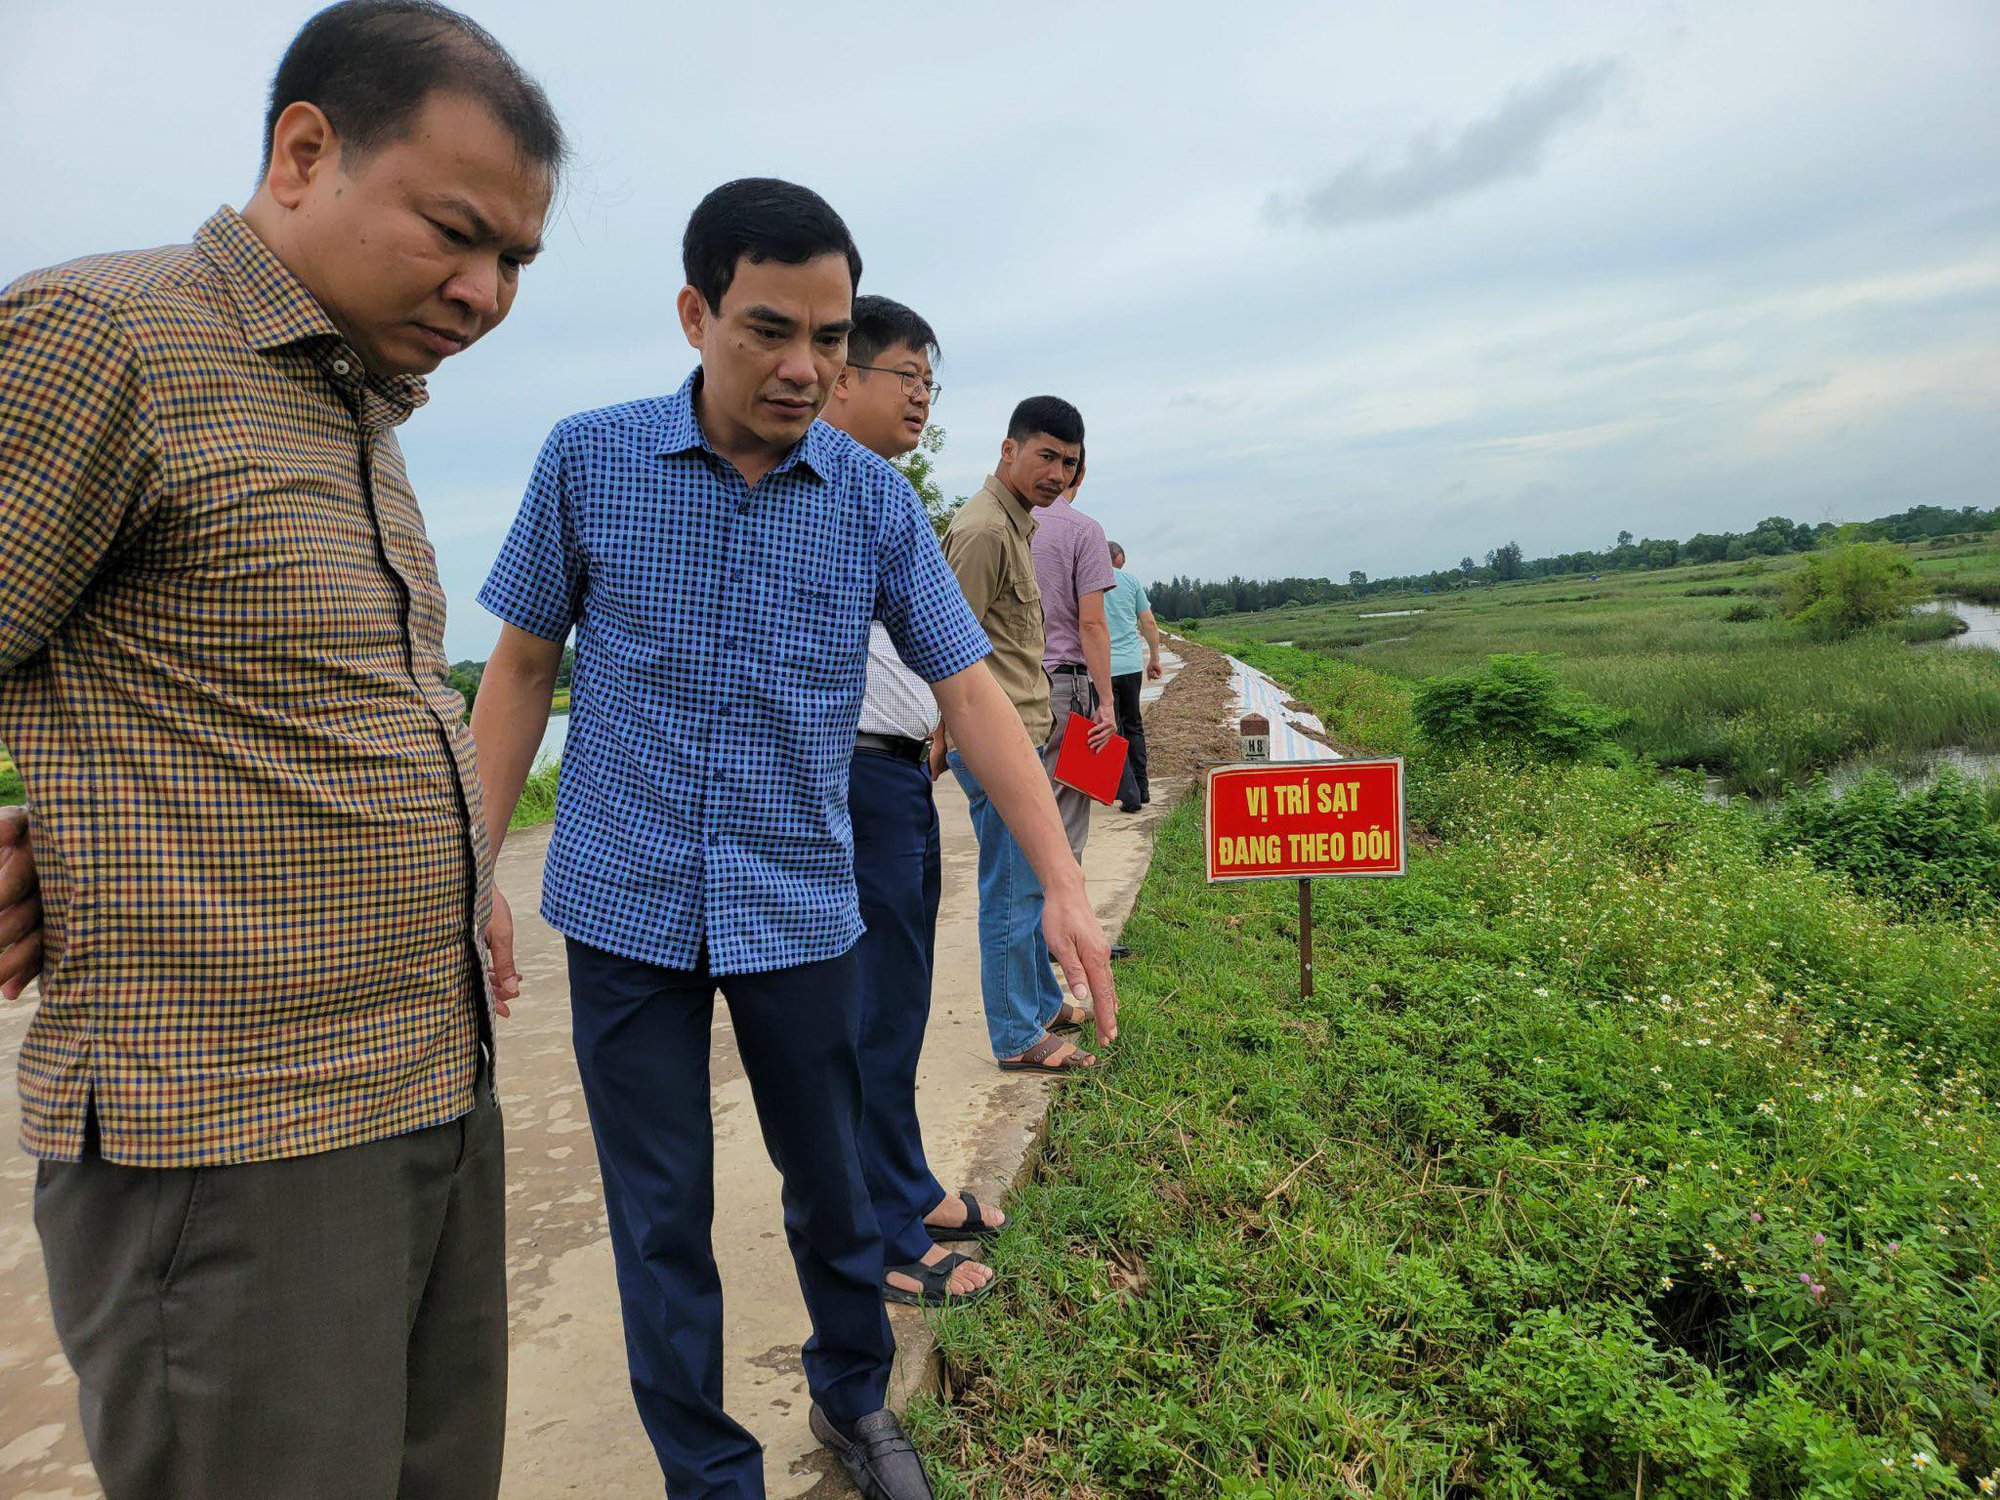 Đê tả sông Mã sụt lún dài 1km, đe dọa hơn 29.000 dân, Thanh Hóa được khuyến cáo ban bố tình trạng khẩn cấp - Ảnh 1.